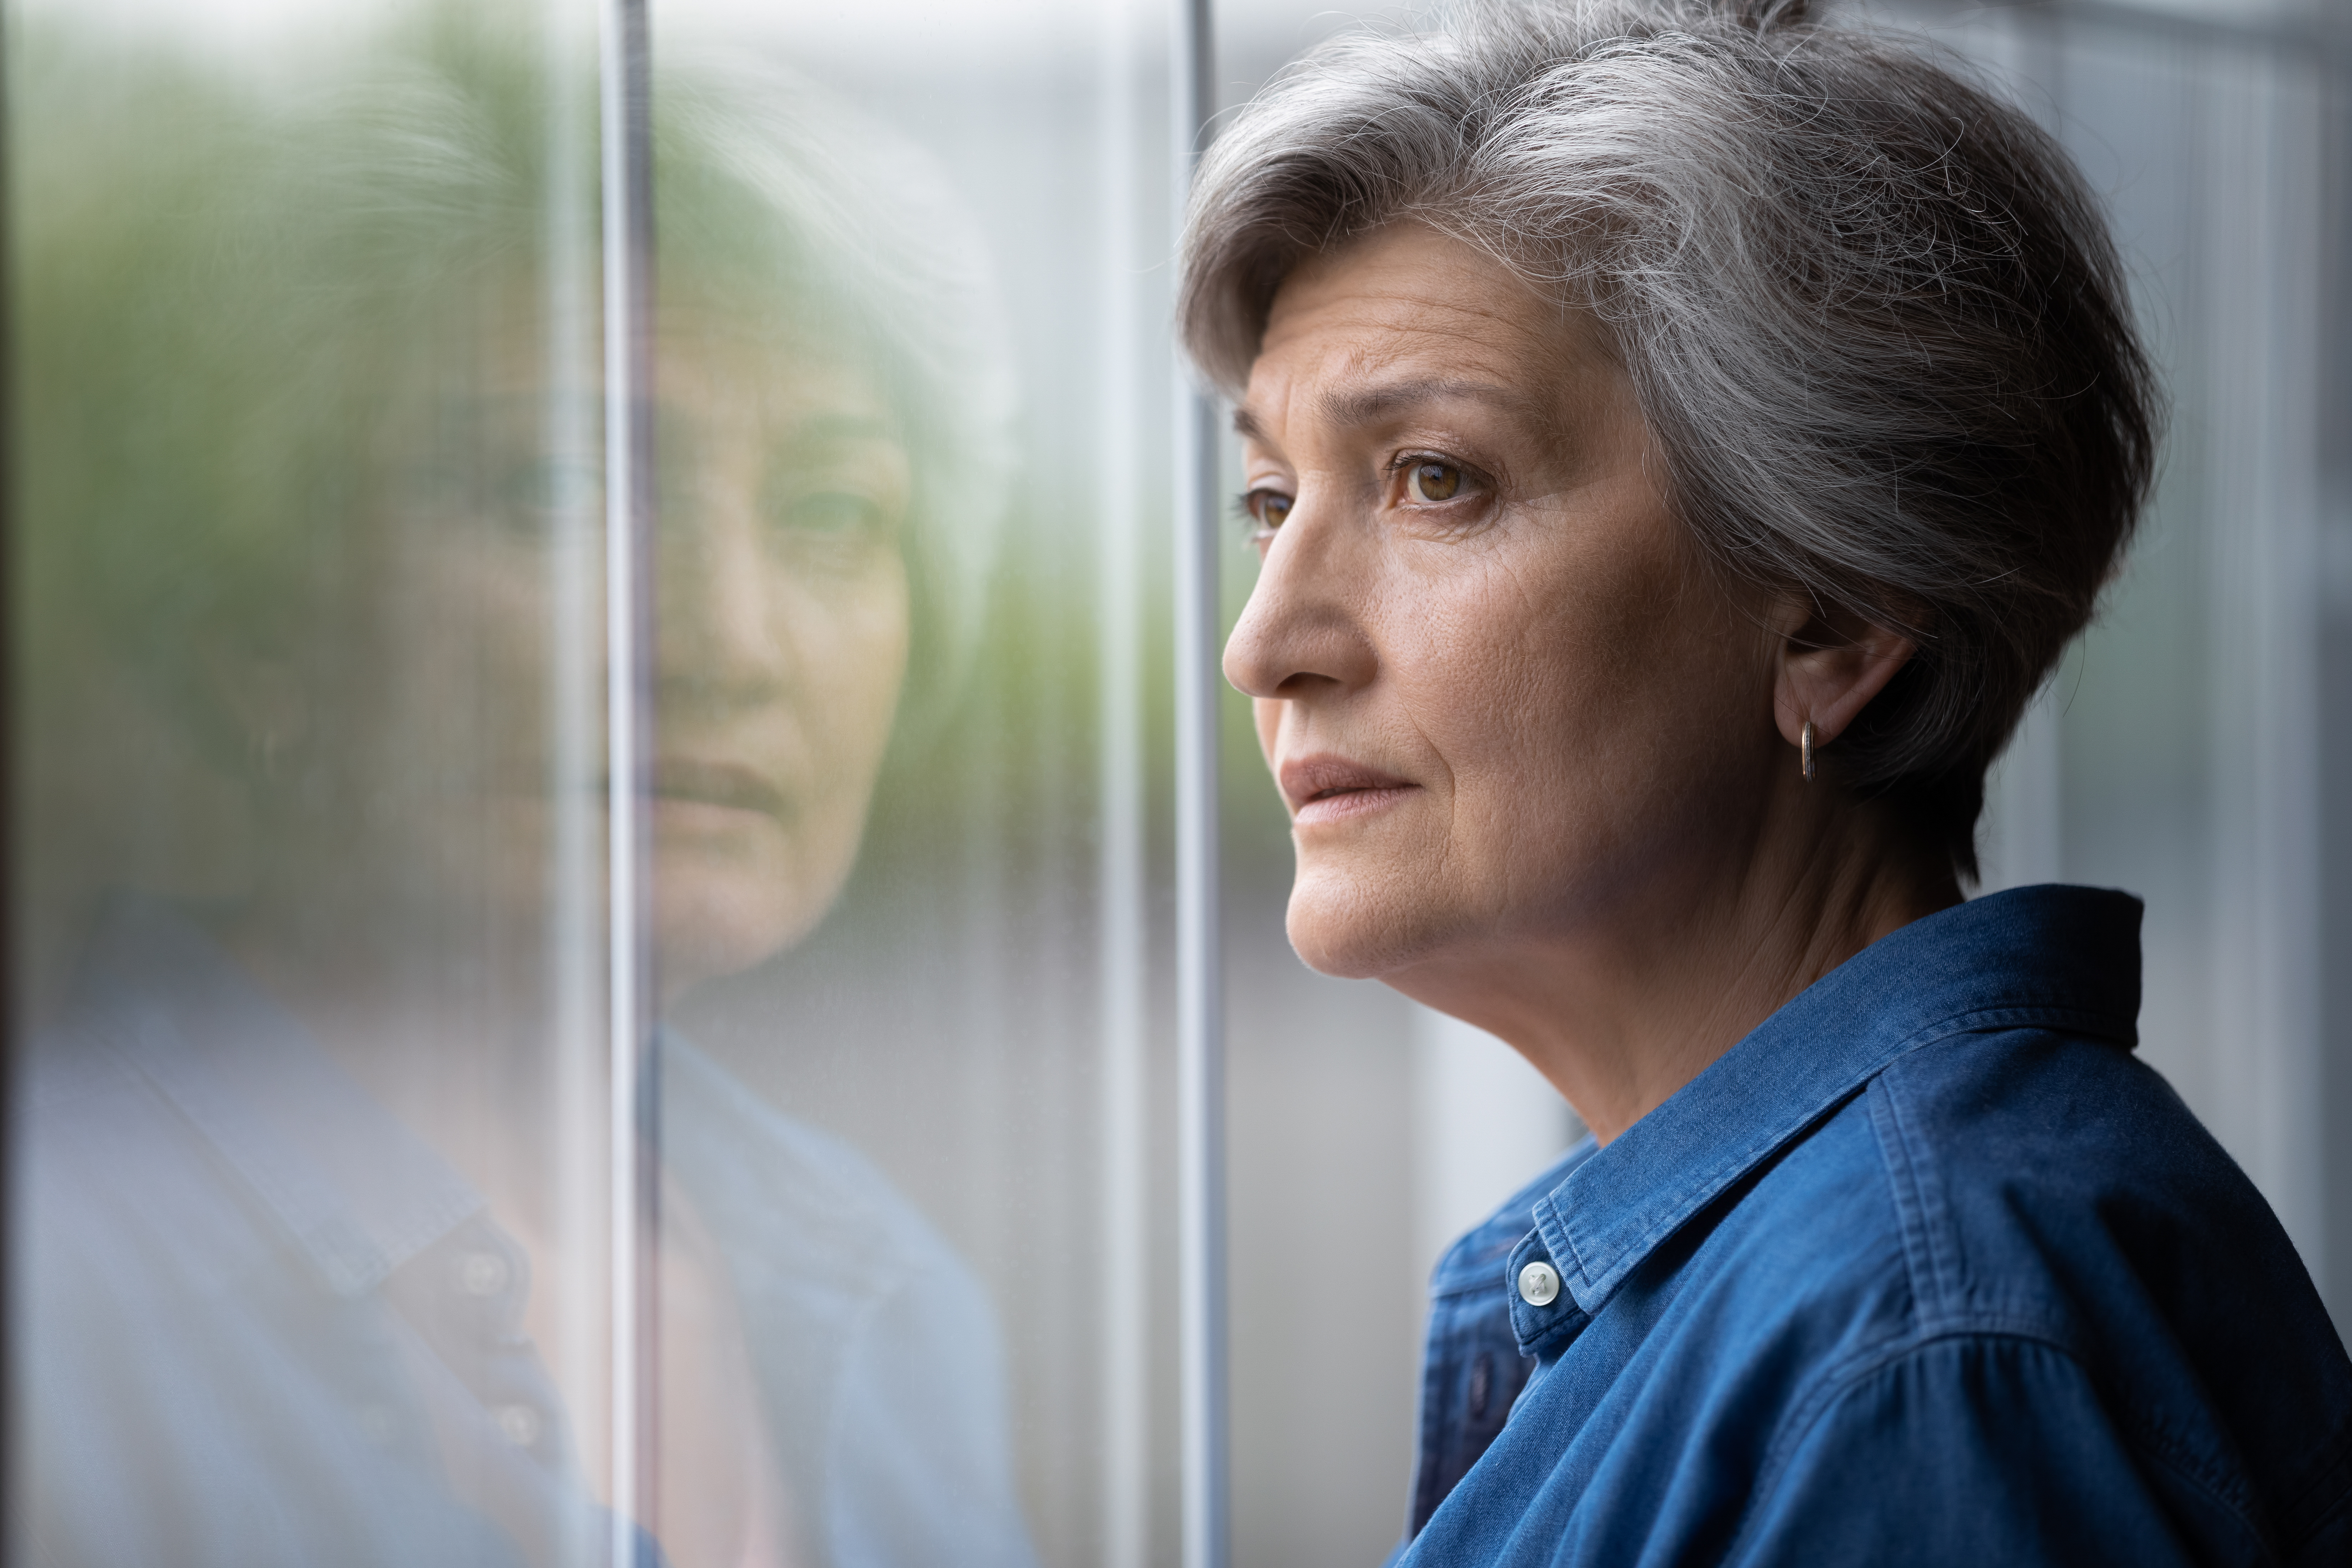 An older woman standing near a window | Source: Shutterstock